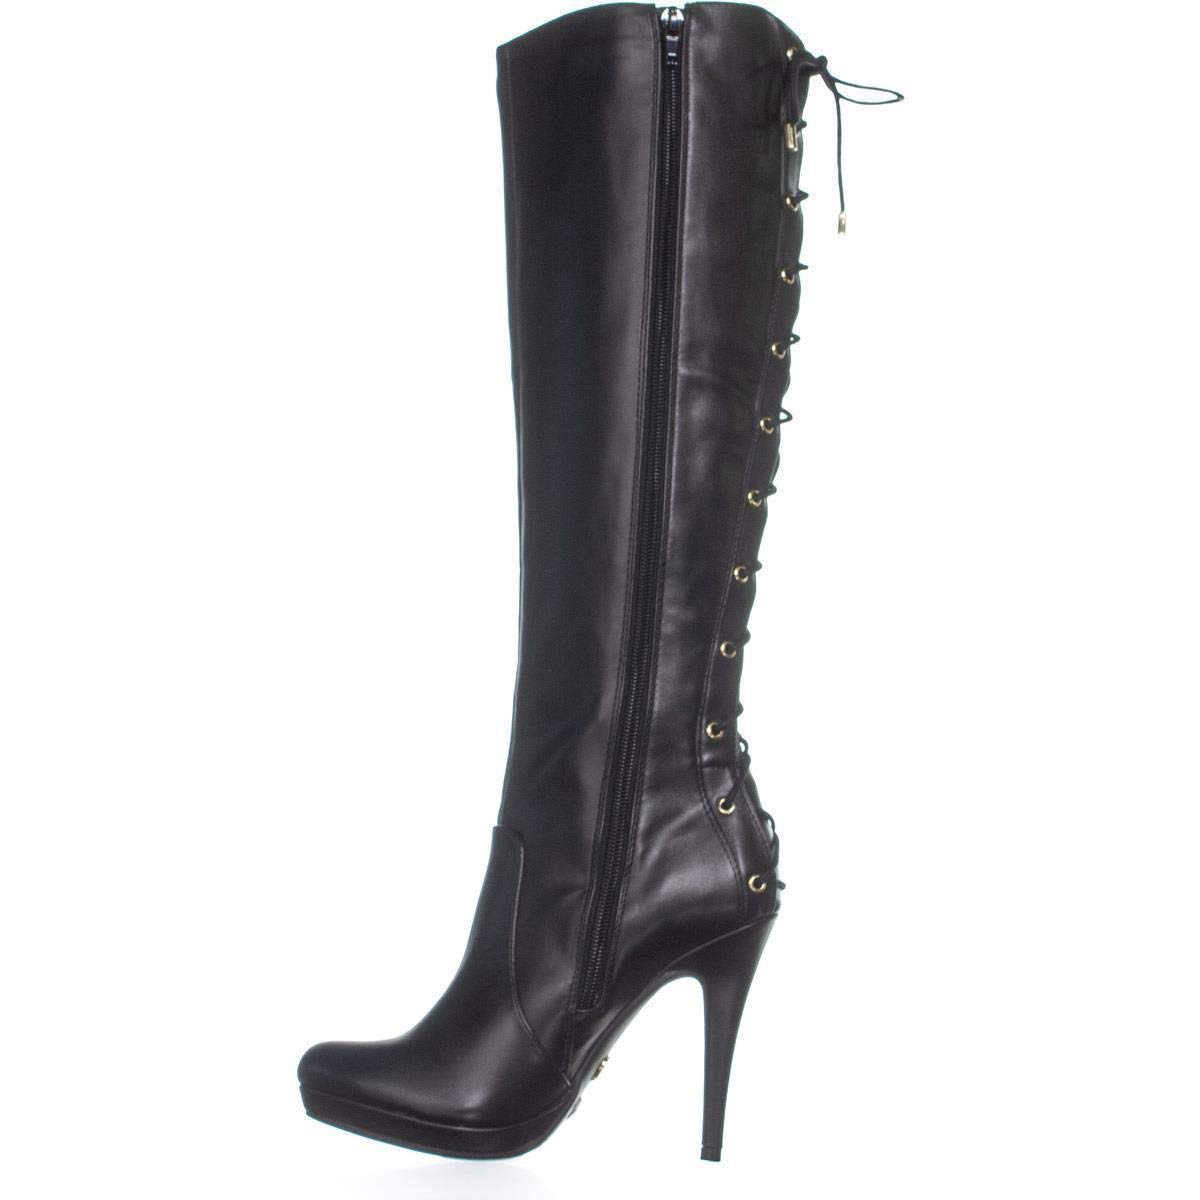 Thalia Sodi Womens Boots in Black Color, Size 5.5 QYX | eBay